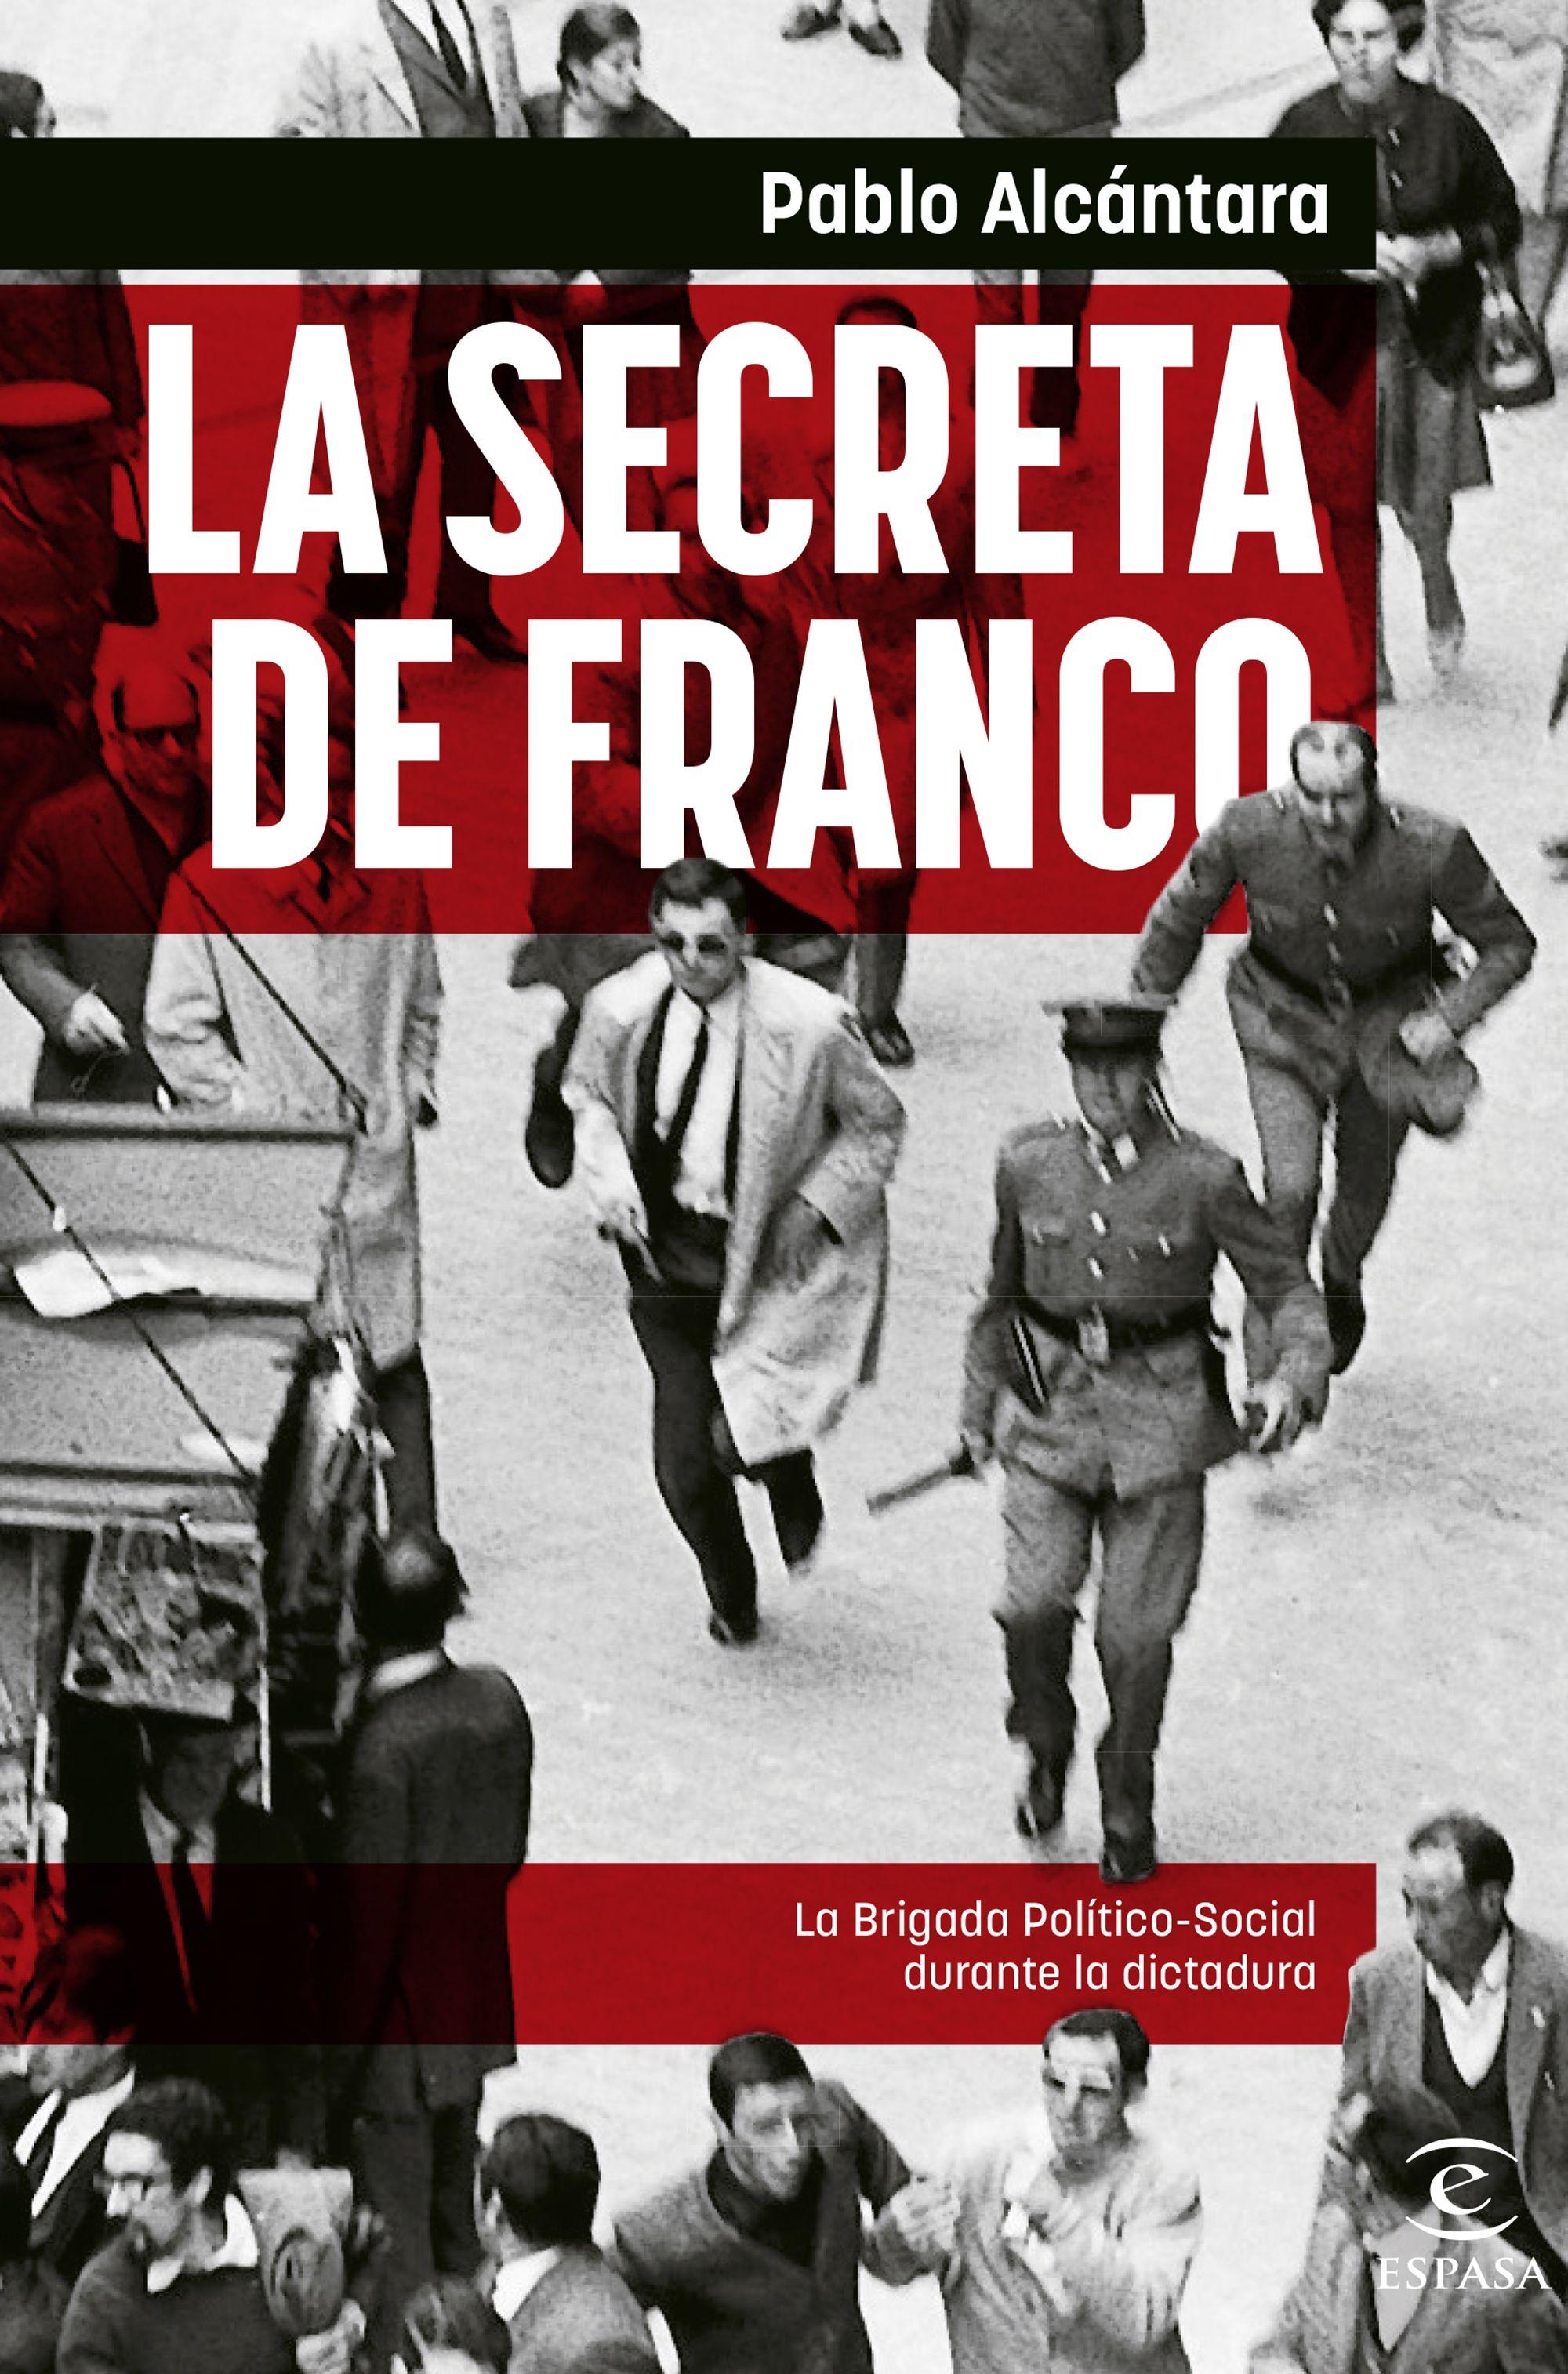 Secreta de Franco, La  "La Brigada Político-Social durante la dictadura"